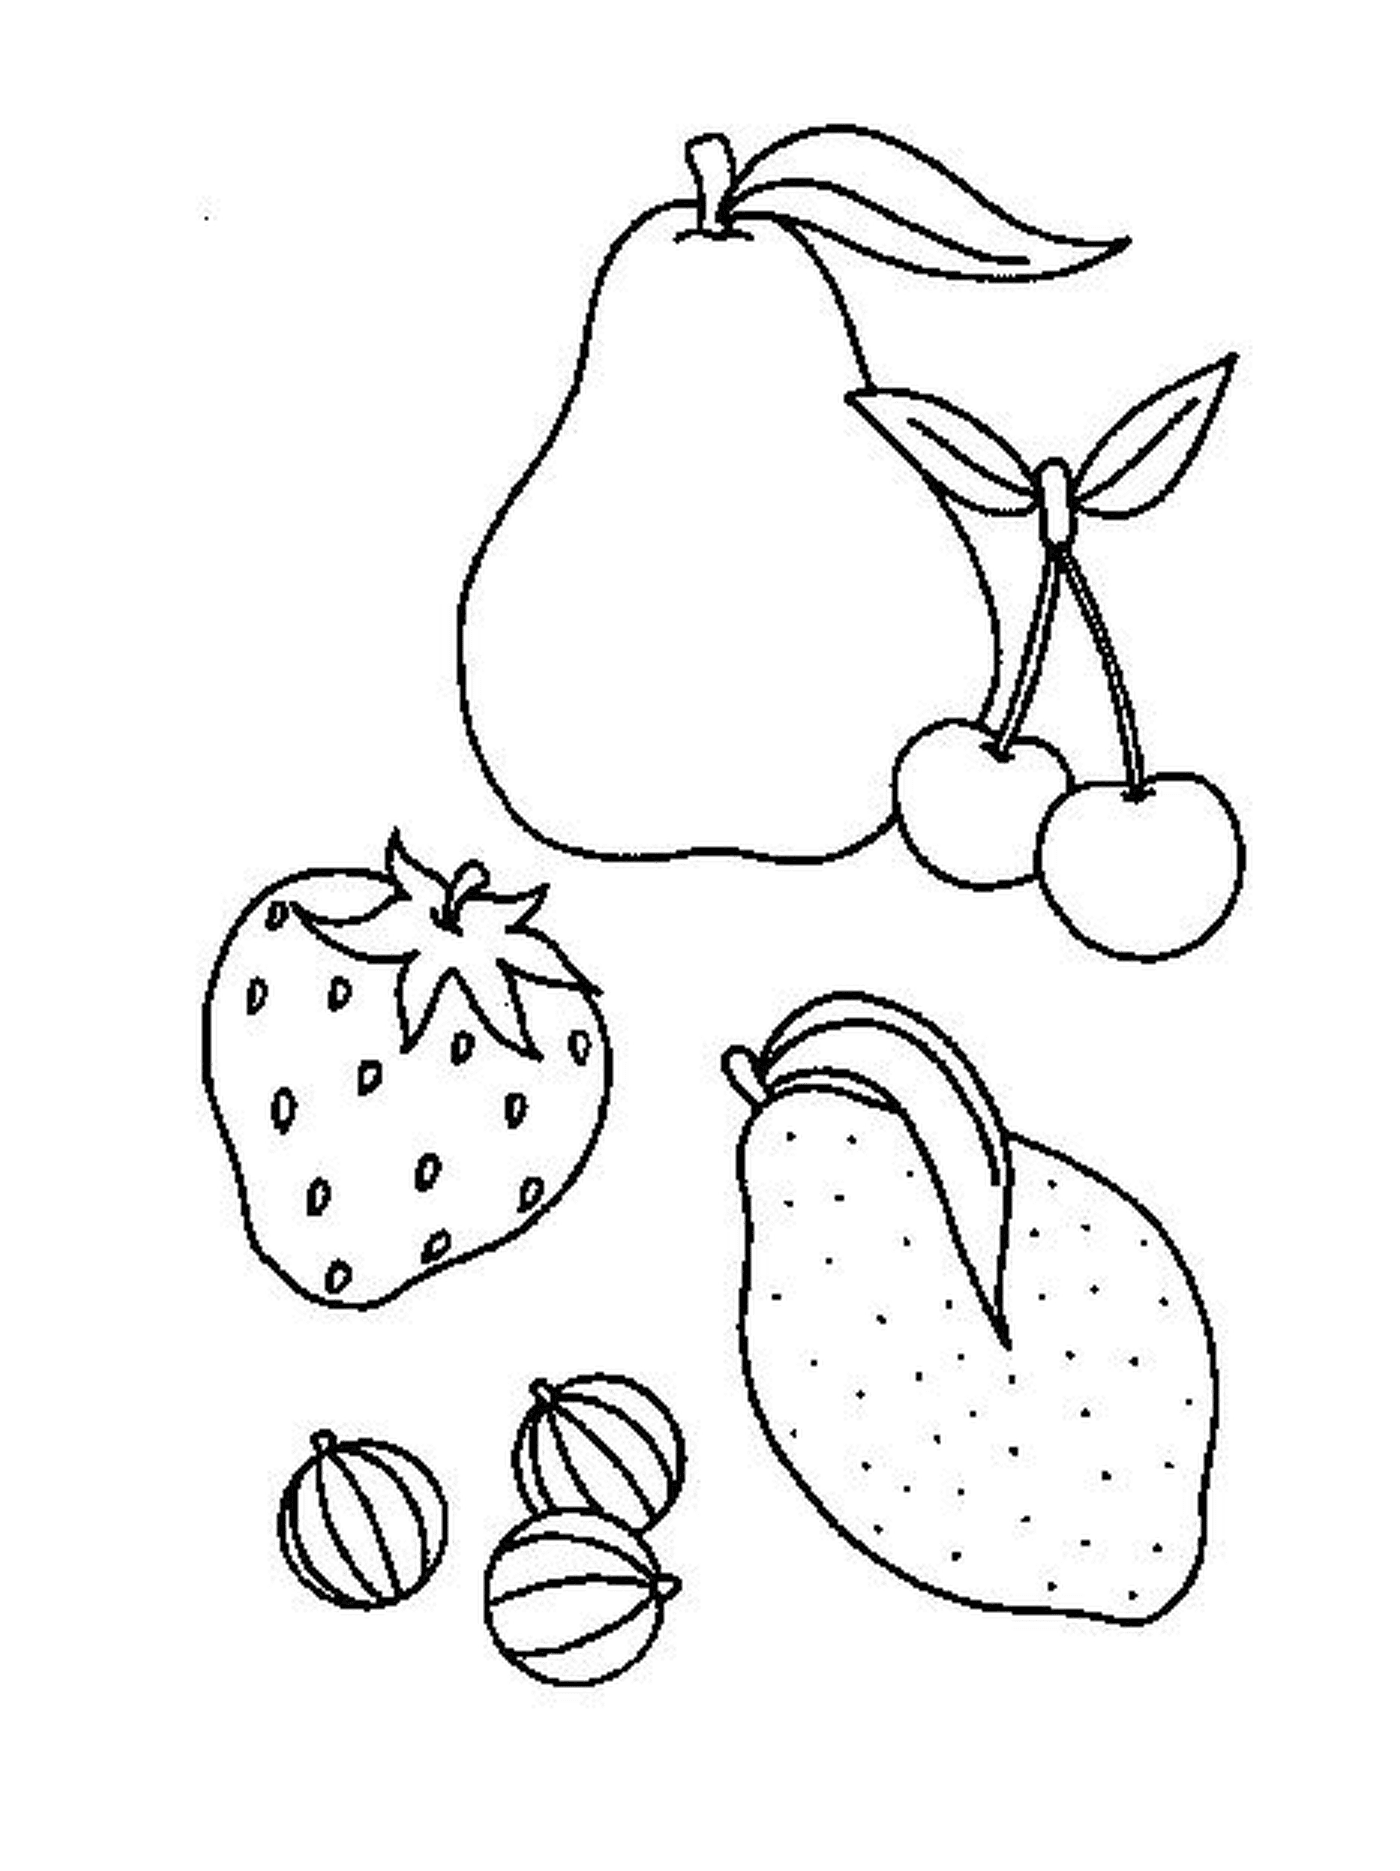  Mistura de Frutas Extraídas 